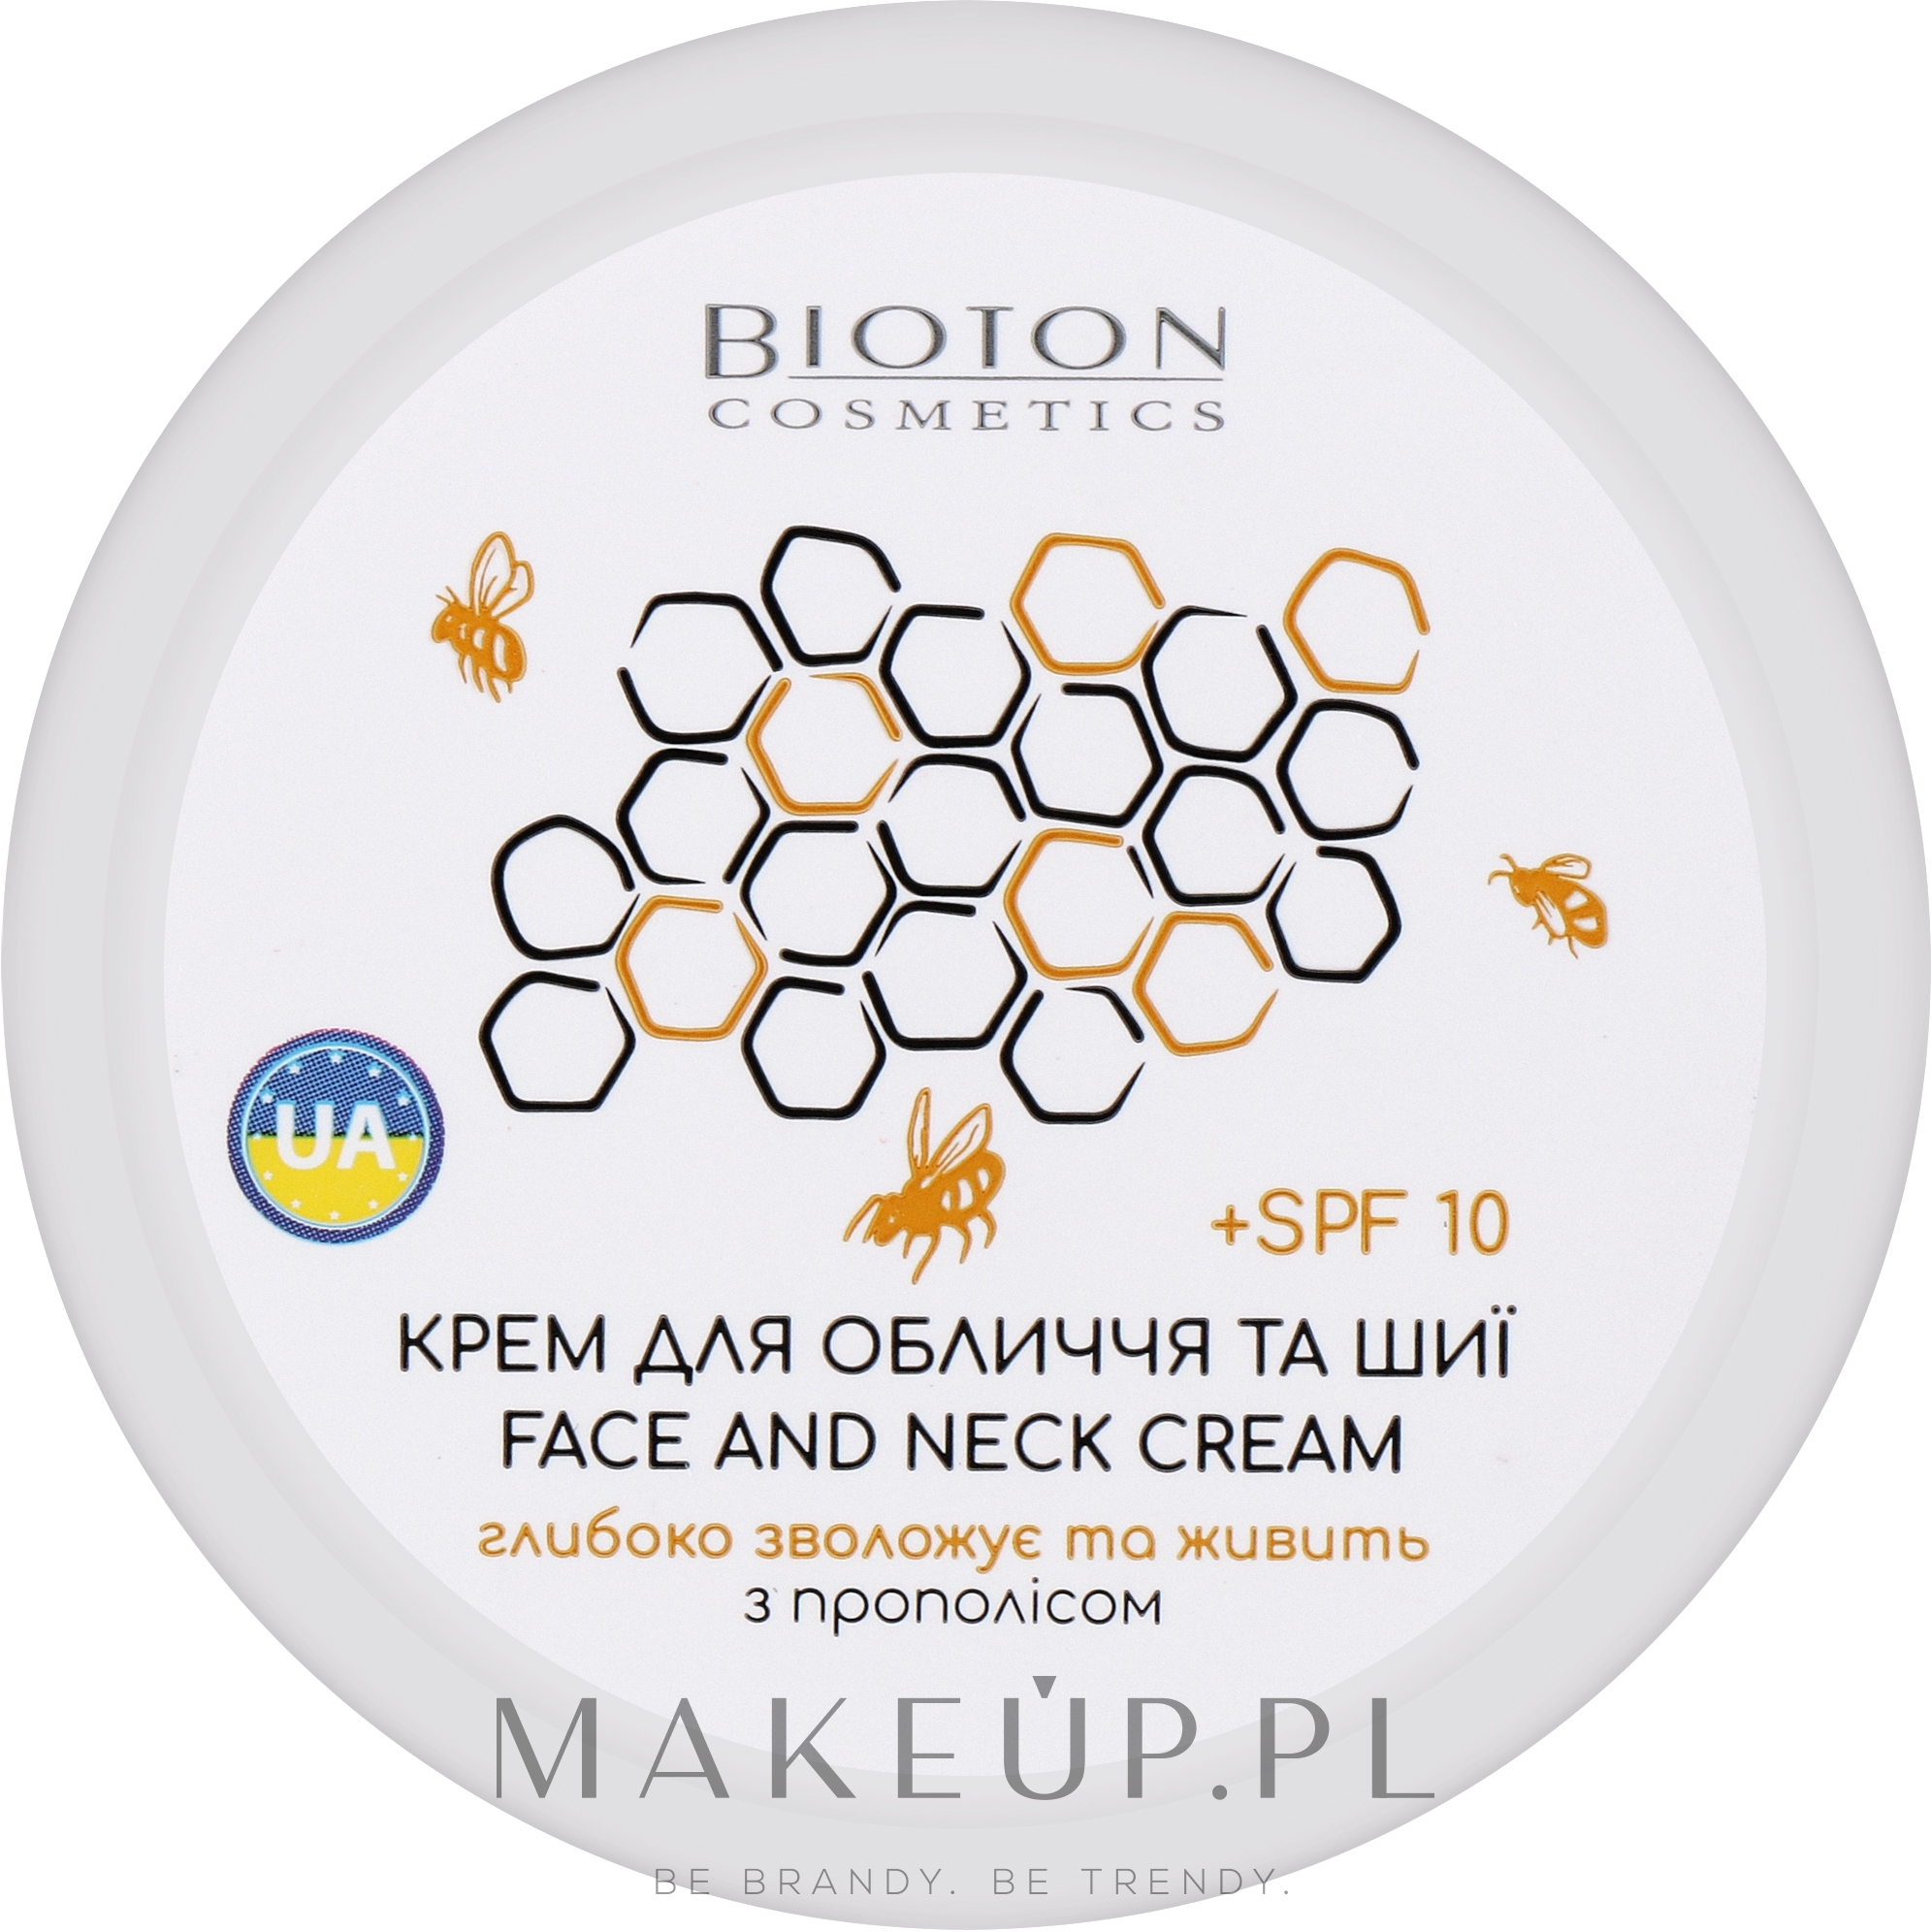 Krem do twarzy i szyi z ekstraktem z propolisu - Bioton Cosmetics Face & Neck Cream SPF 10 — Zdjęcie 100 ml